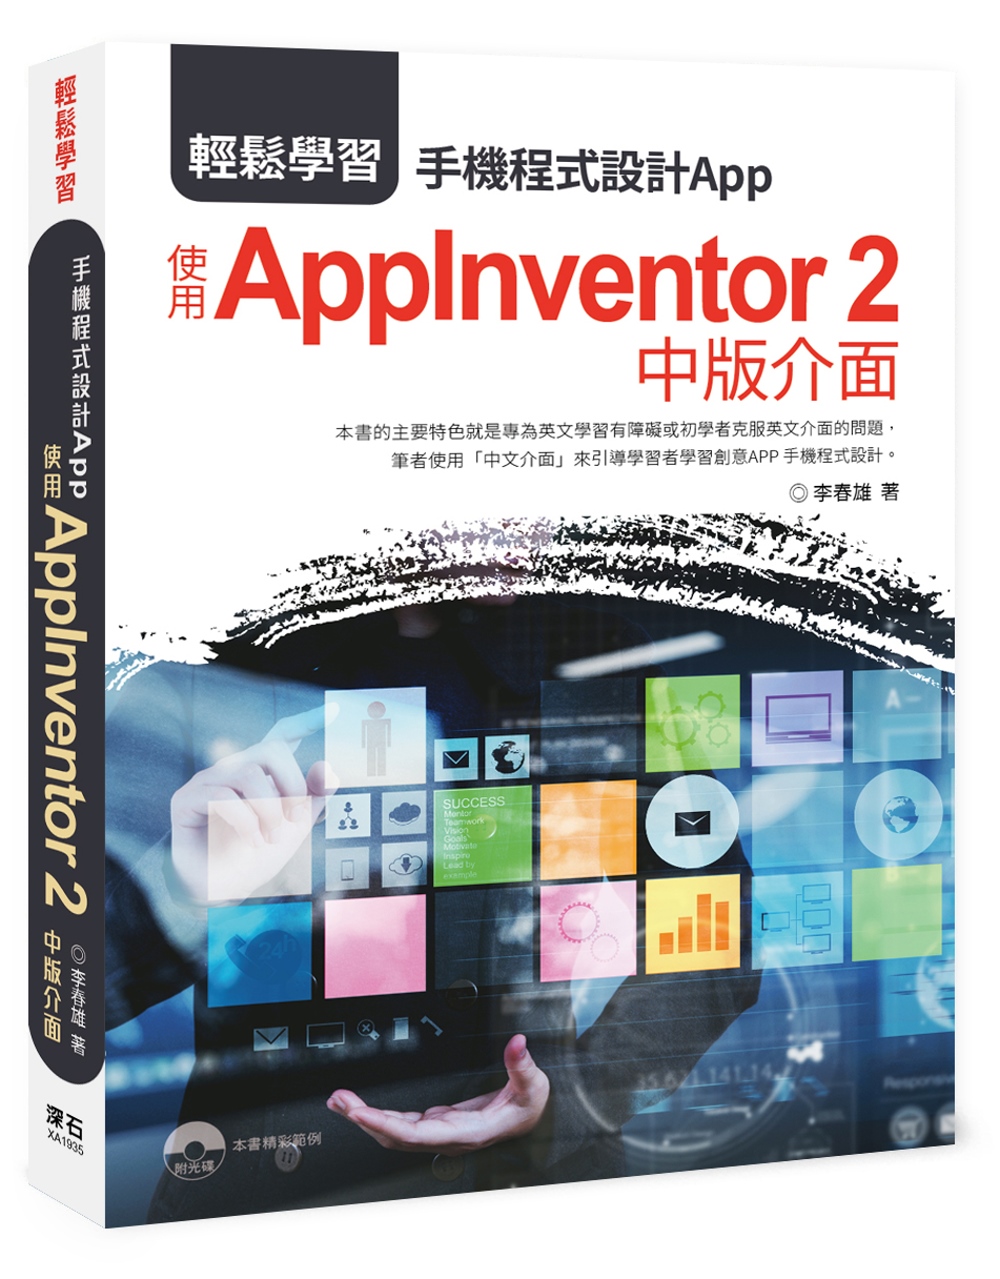 輕鬆學習：手機程式設計App 使用AppInventor 2中版介面